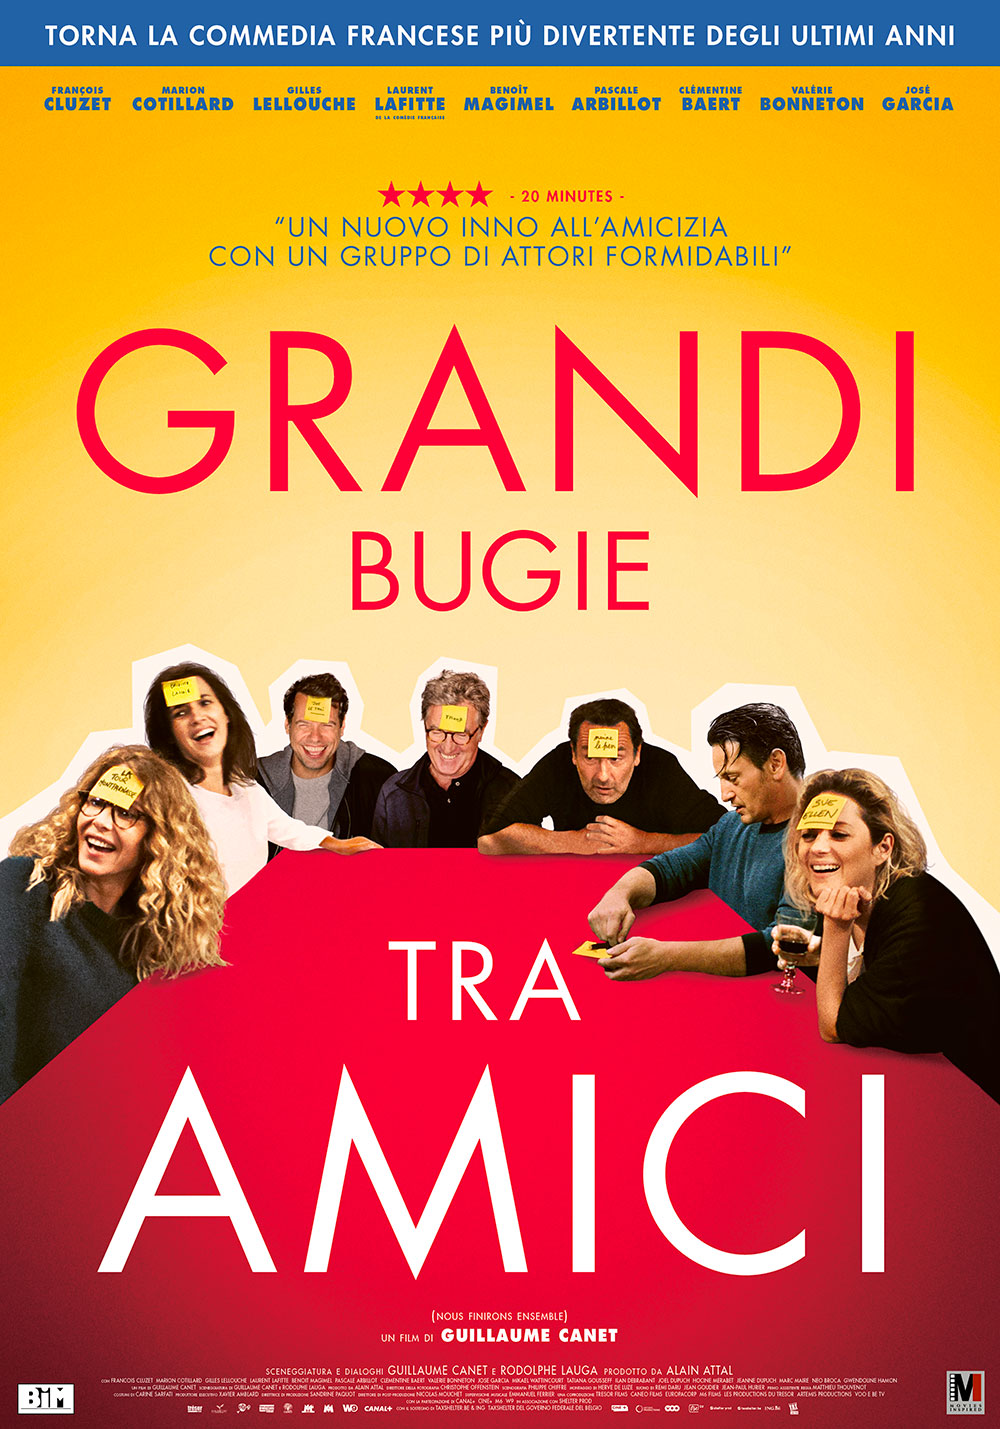  Dall'articolo: Grandi bugie tra amici, il poster italiano del film.